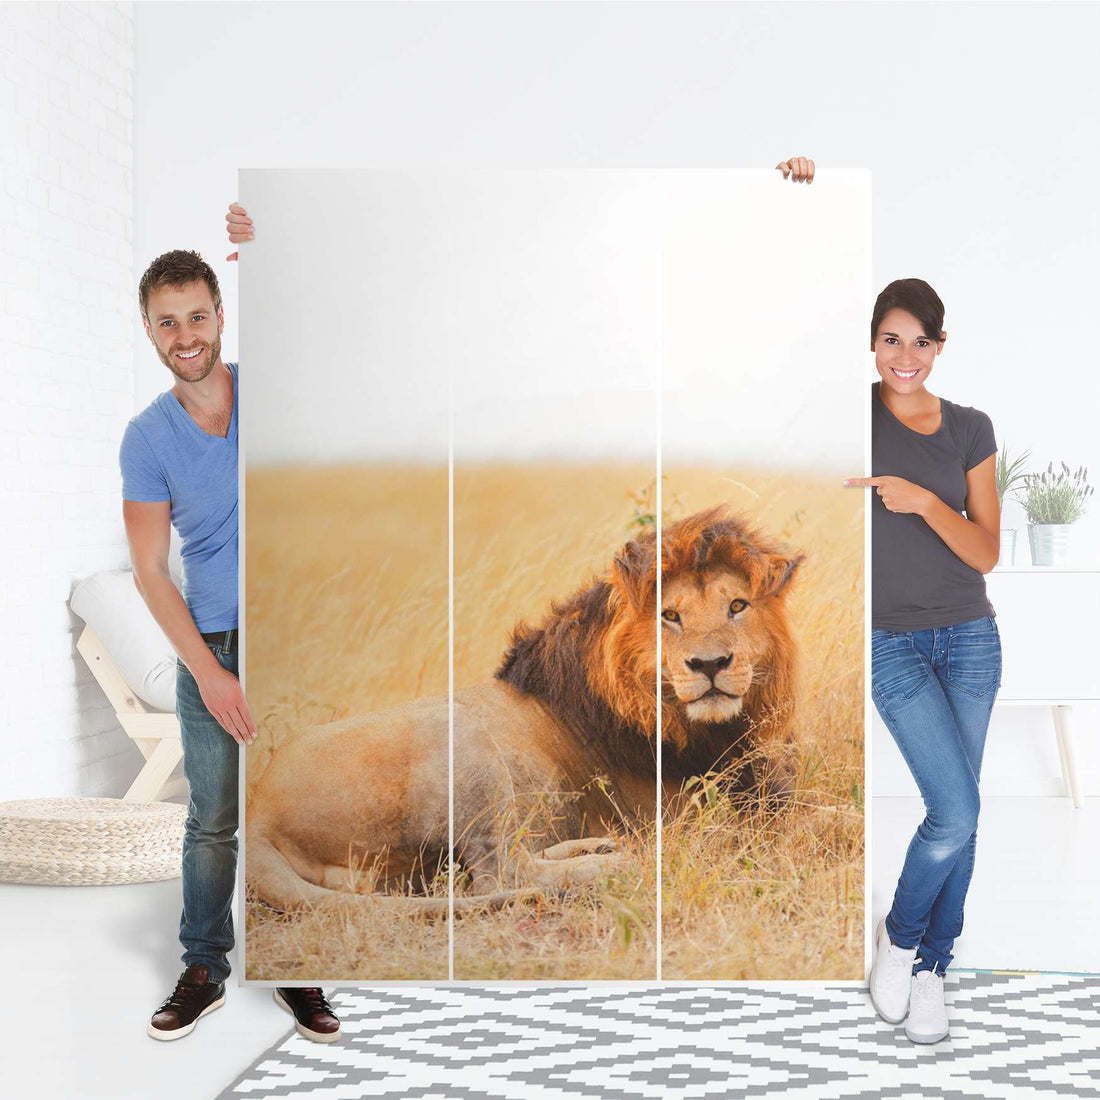 Folie für Möbel Lion King - IKEA Pax Schrank 201 cm Höhe - 3 Türen - Folie